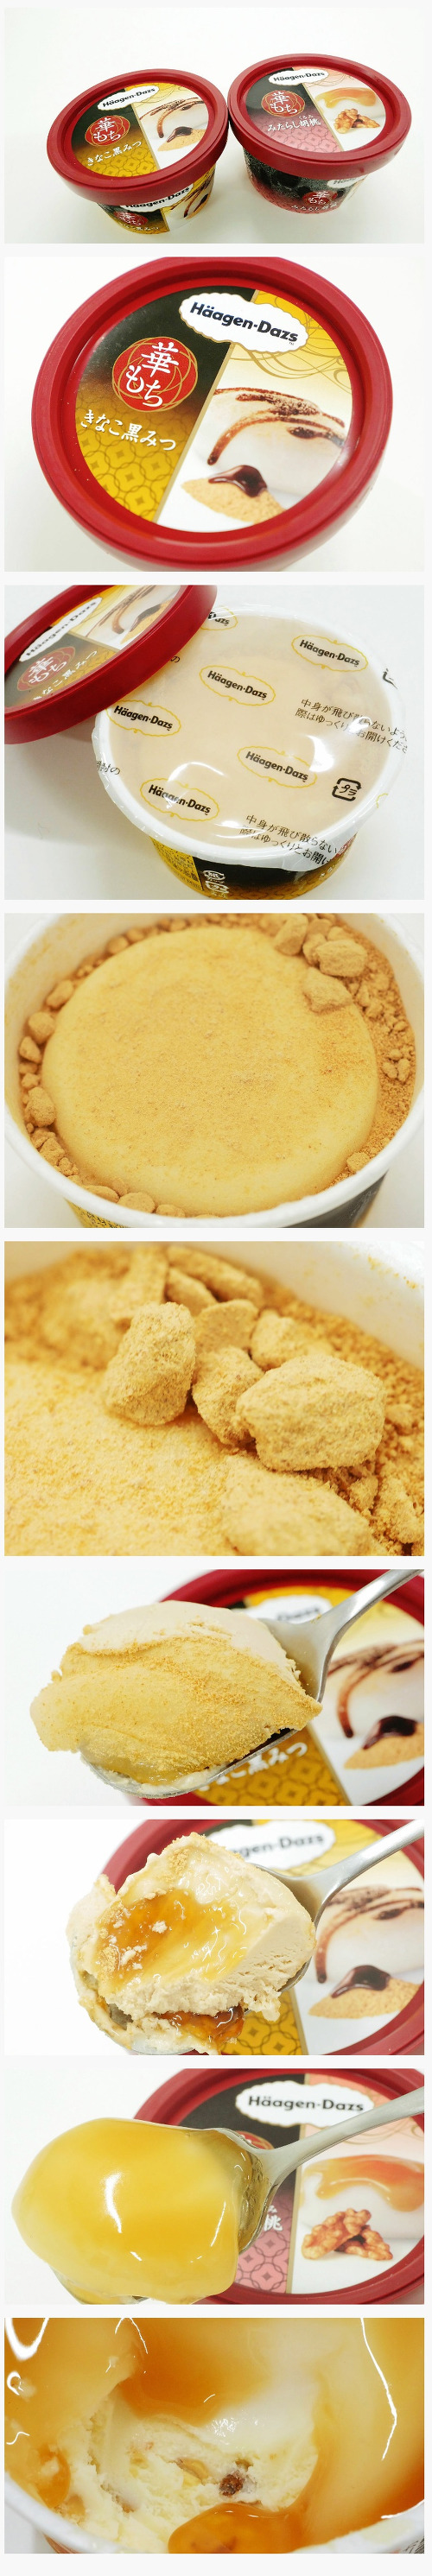 하겐다즈 일본의 허니버터칩, 일본 인기 아이스크림